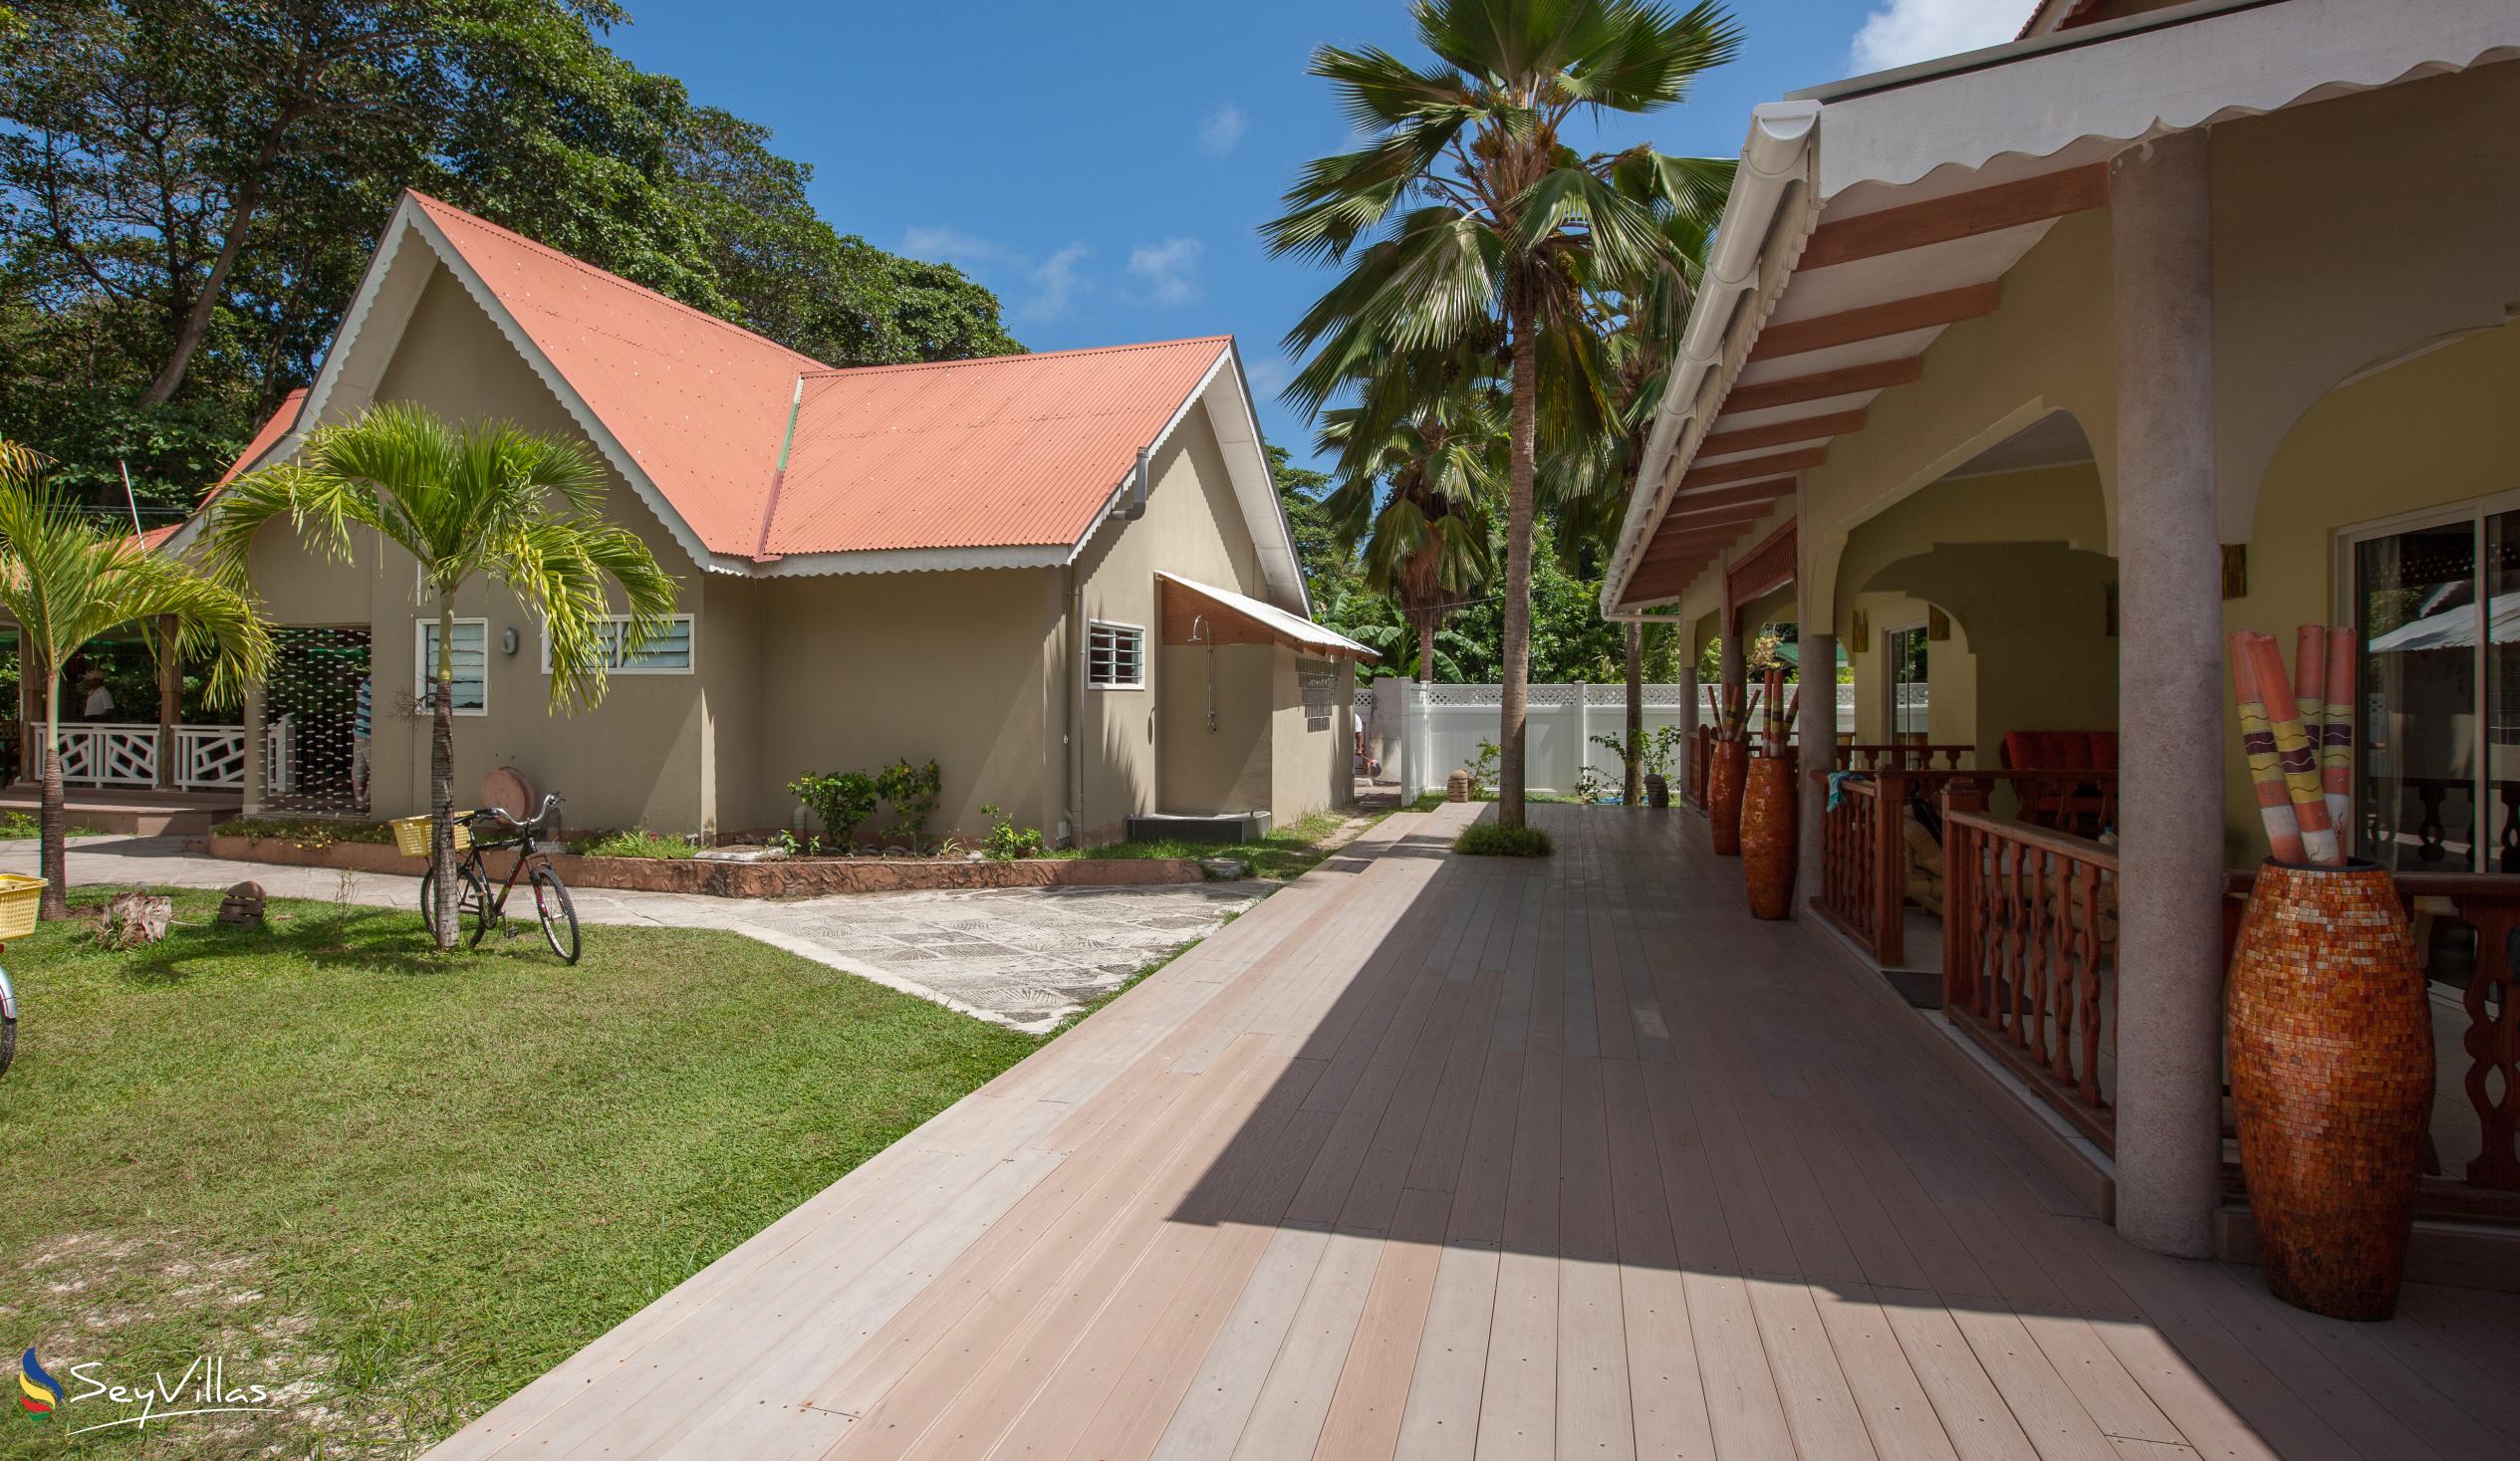 Foto 5: Villa Authentique - Aussenbereich - La Digue (Seychellen)